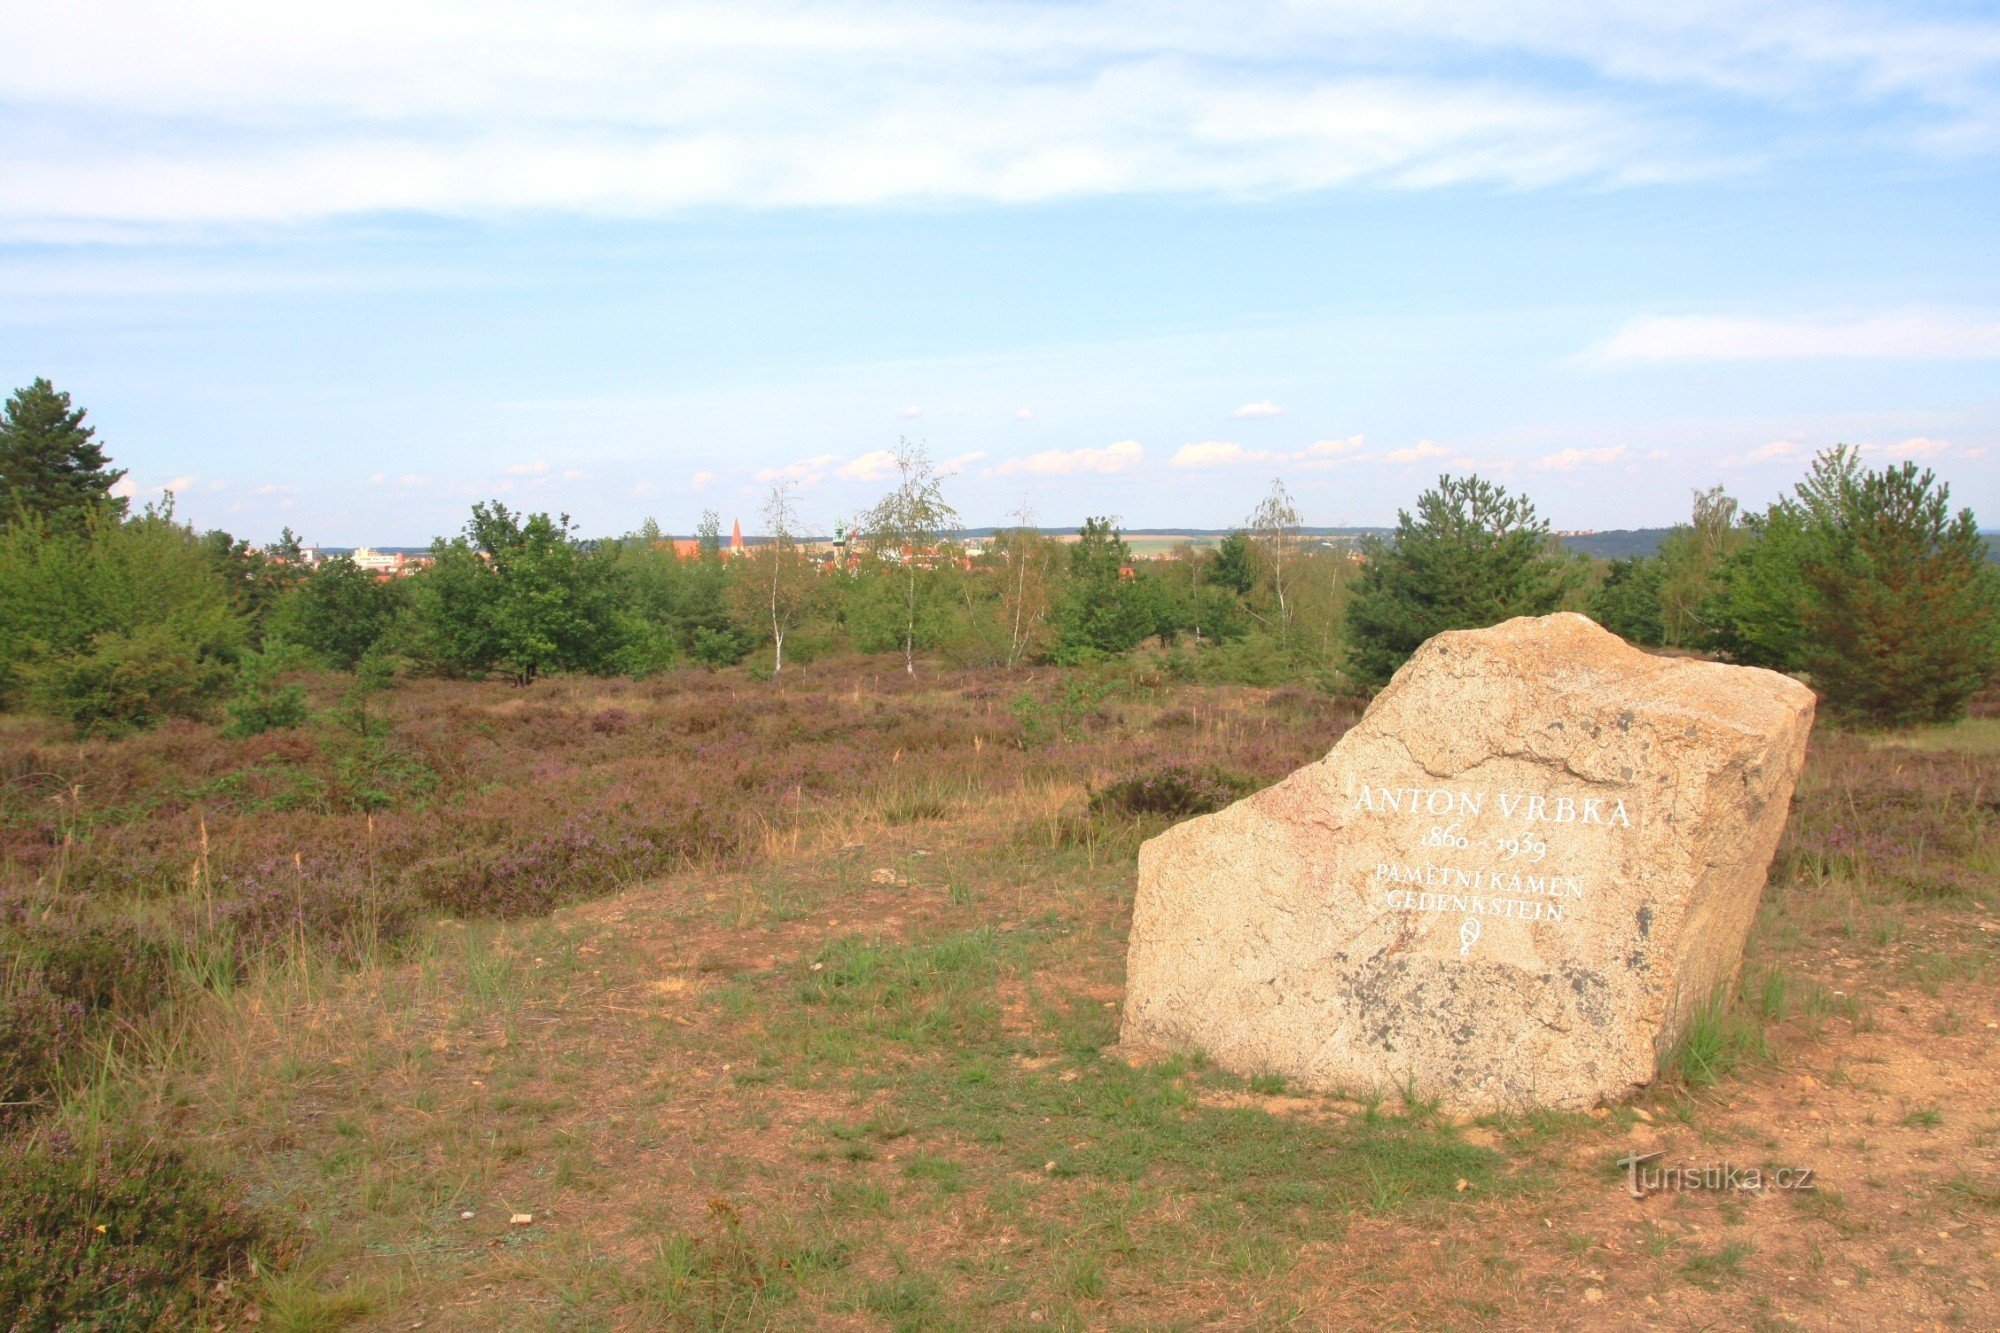 Крави гора - памятник Антону Врбке